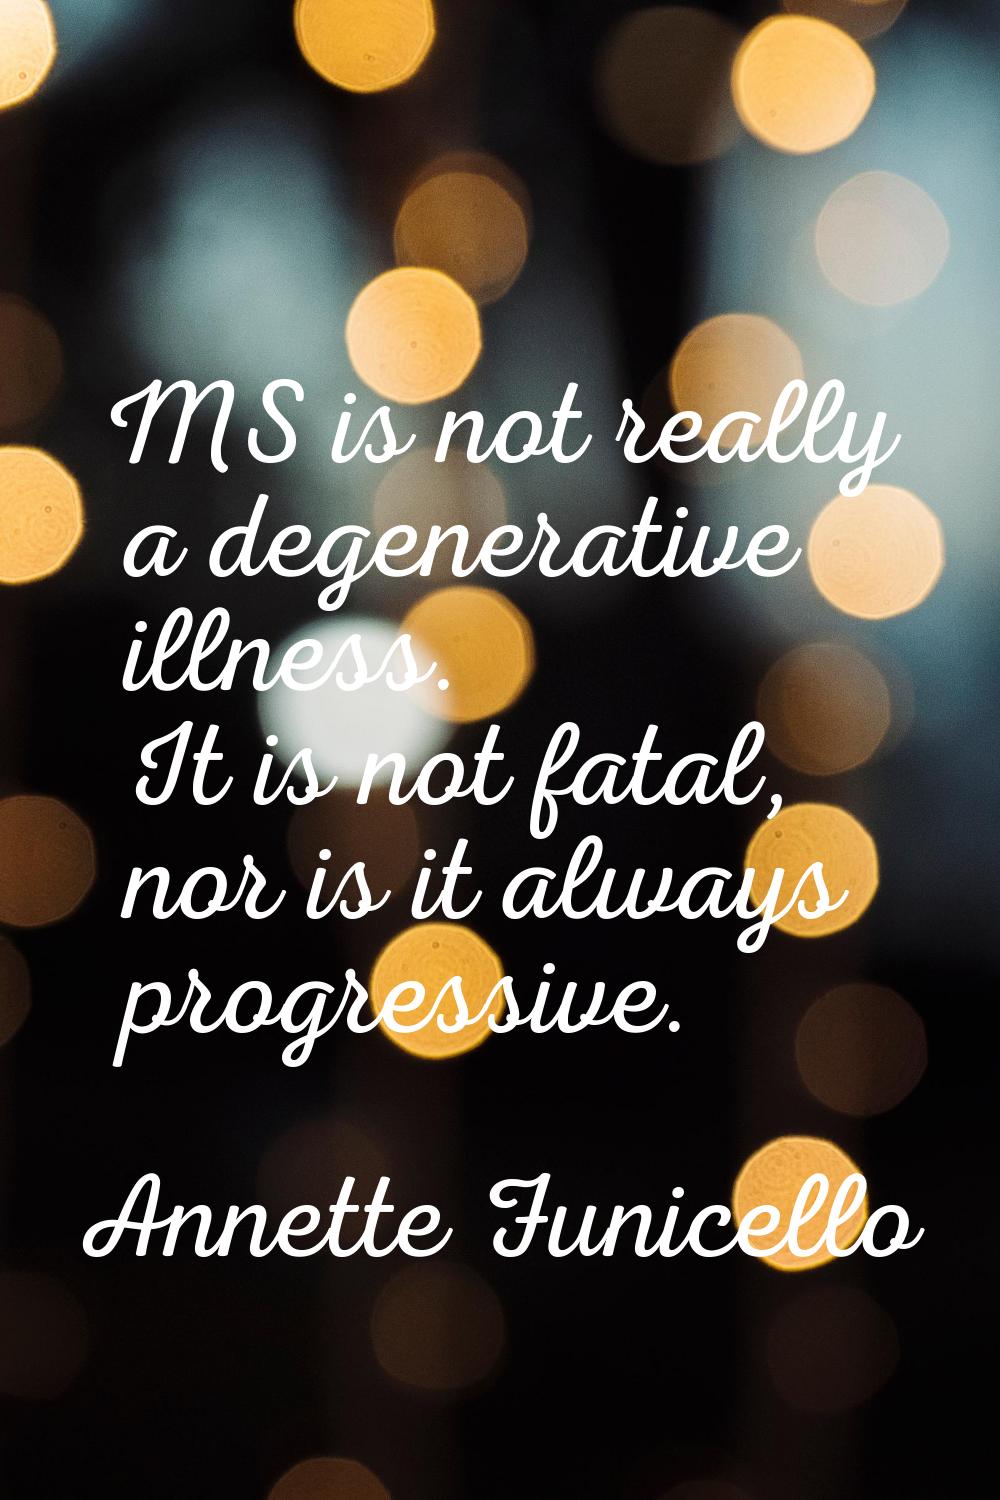 MS is not really a degenerative illness. It is not fatal, nor is it always progressive.